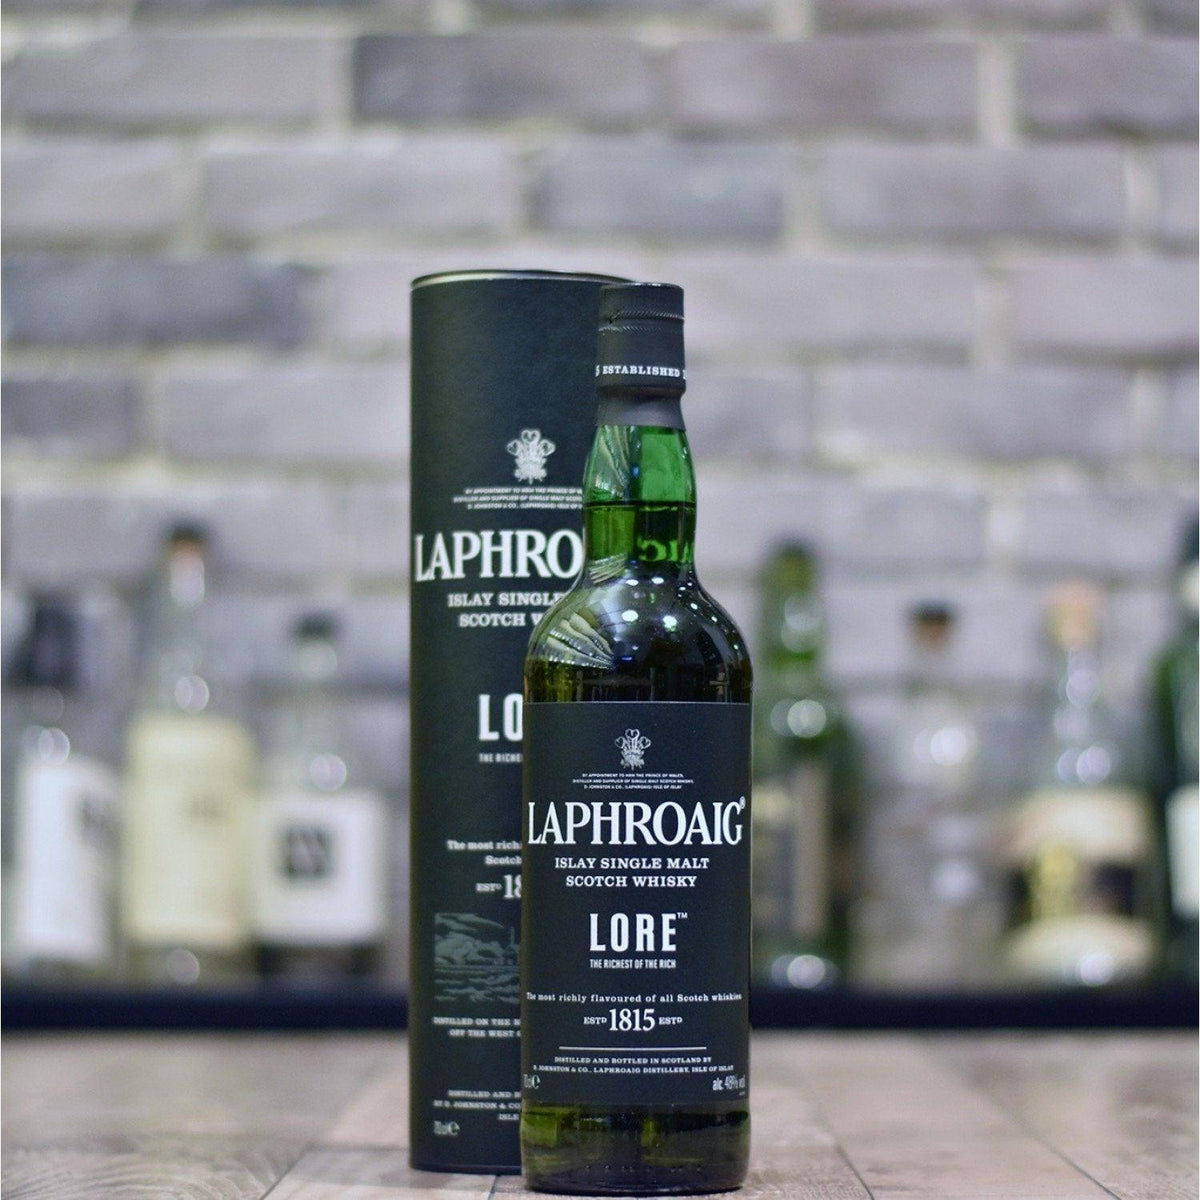 Laphroaig LORE - The Rare Malt